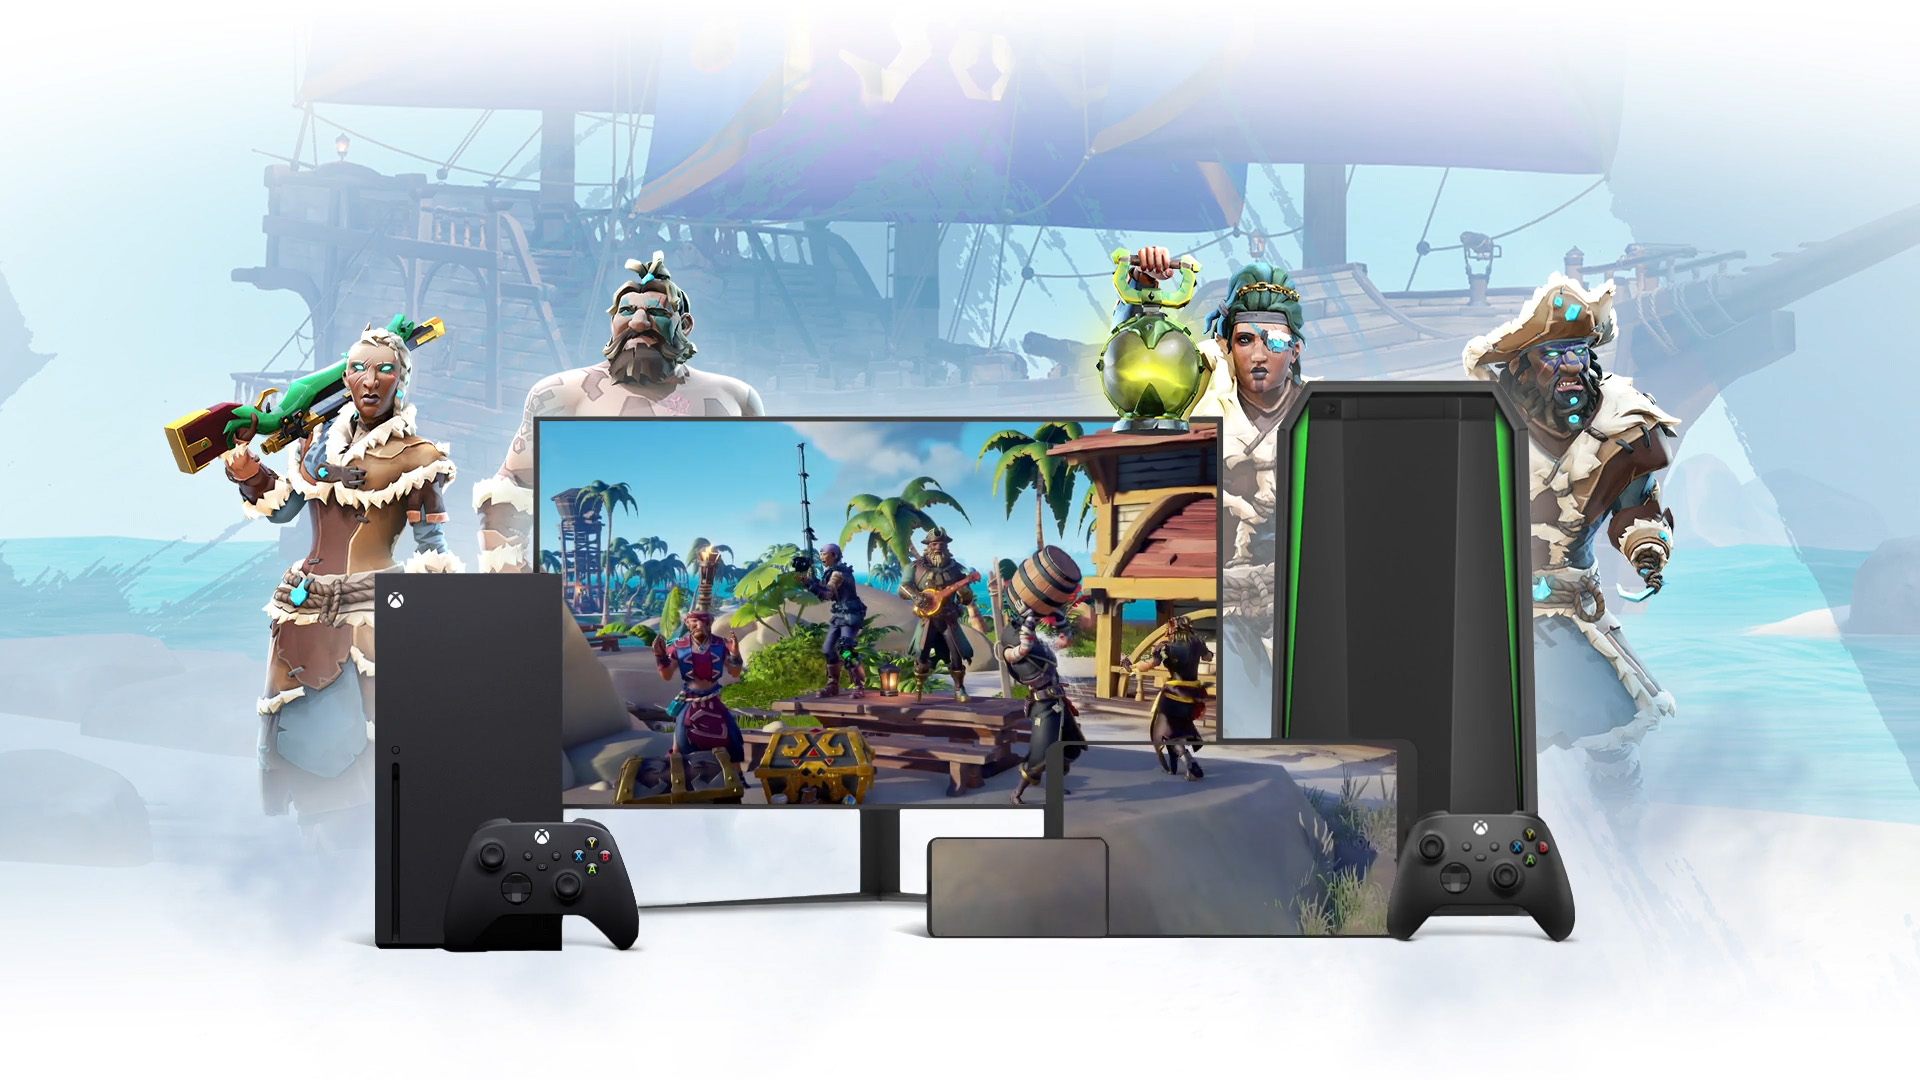 ノート PC、テレビ、モバイル デバイスを取り巻く『Sea of Theives』のキャラクターたちと海賊船の背景。